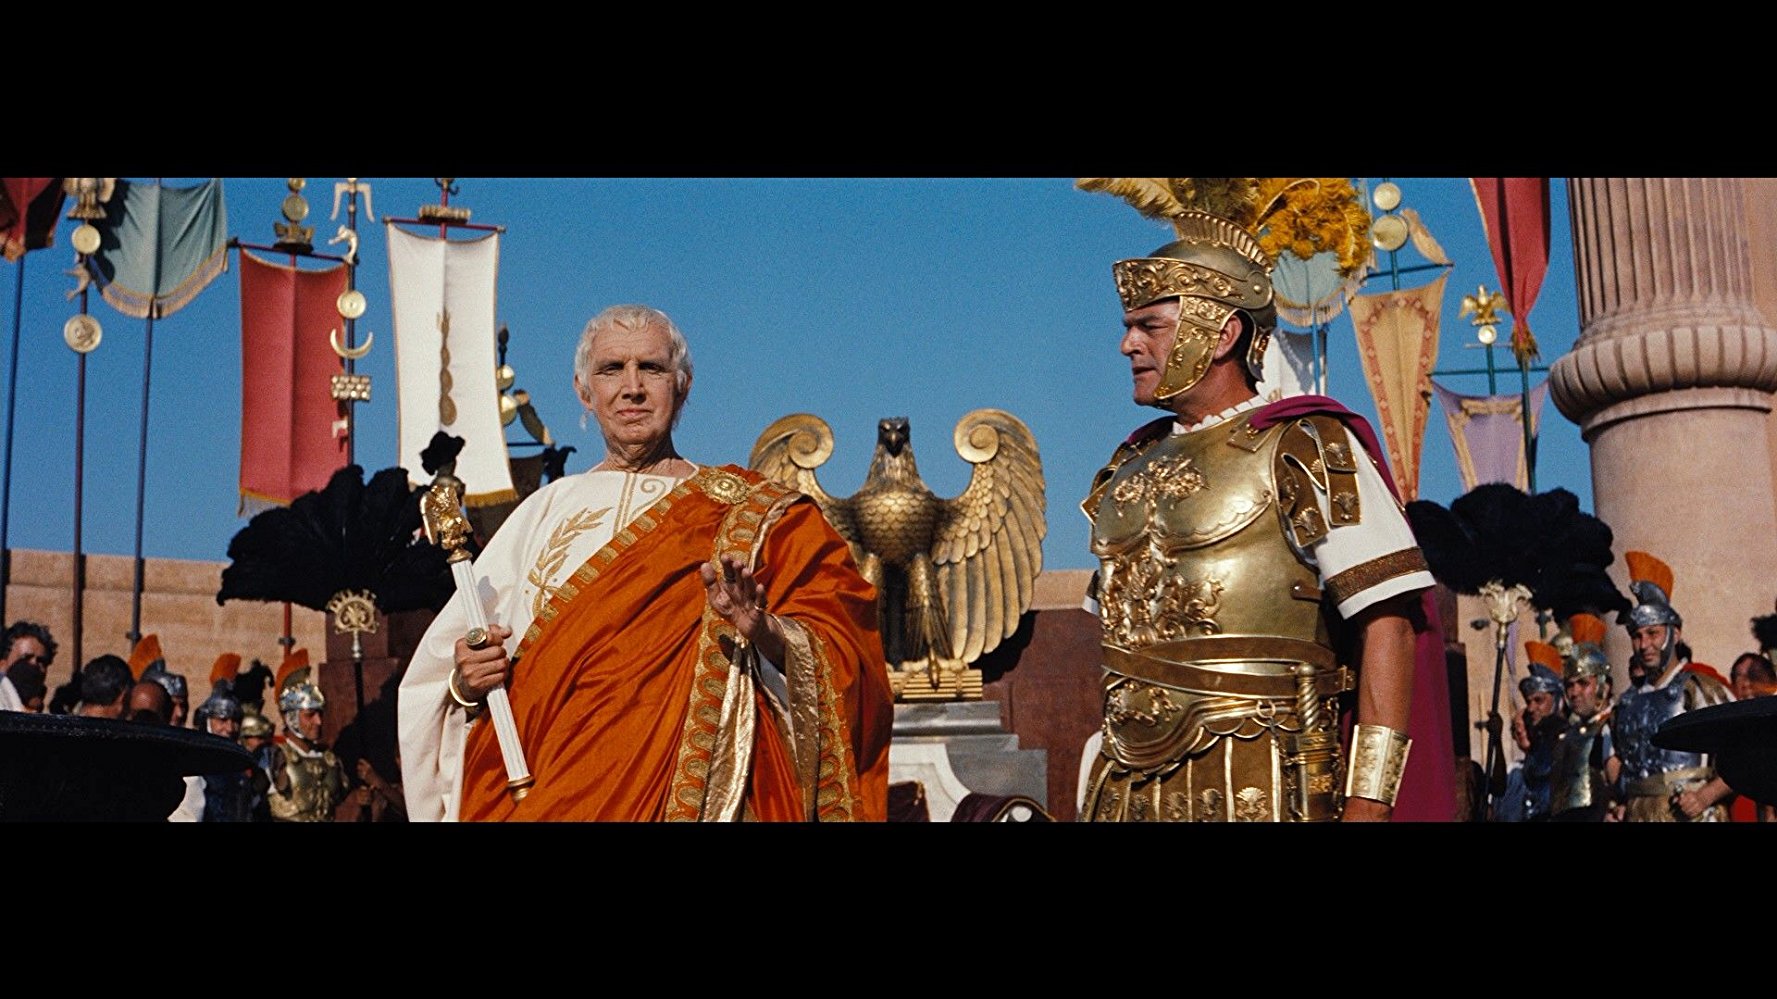 Emperor Tiberius Caesar